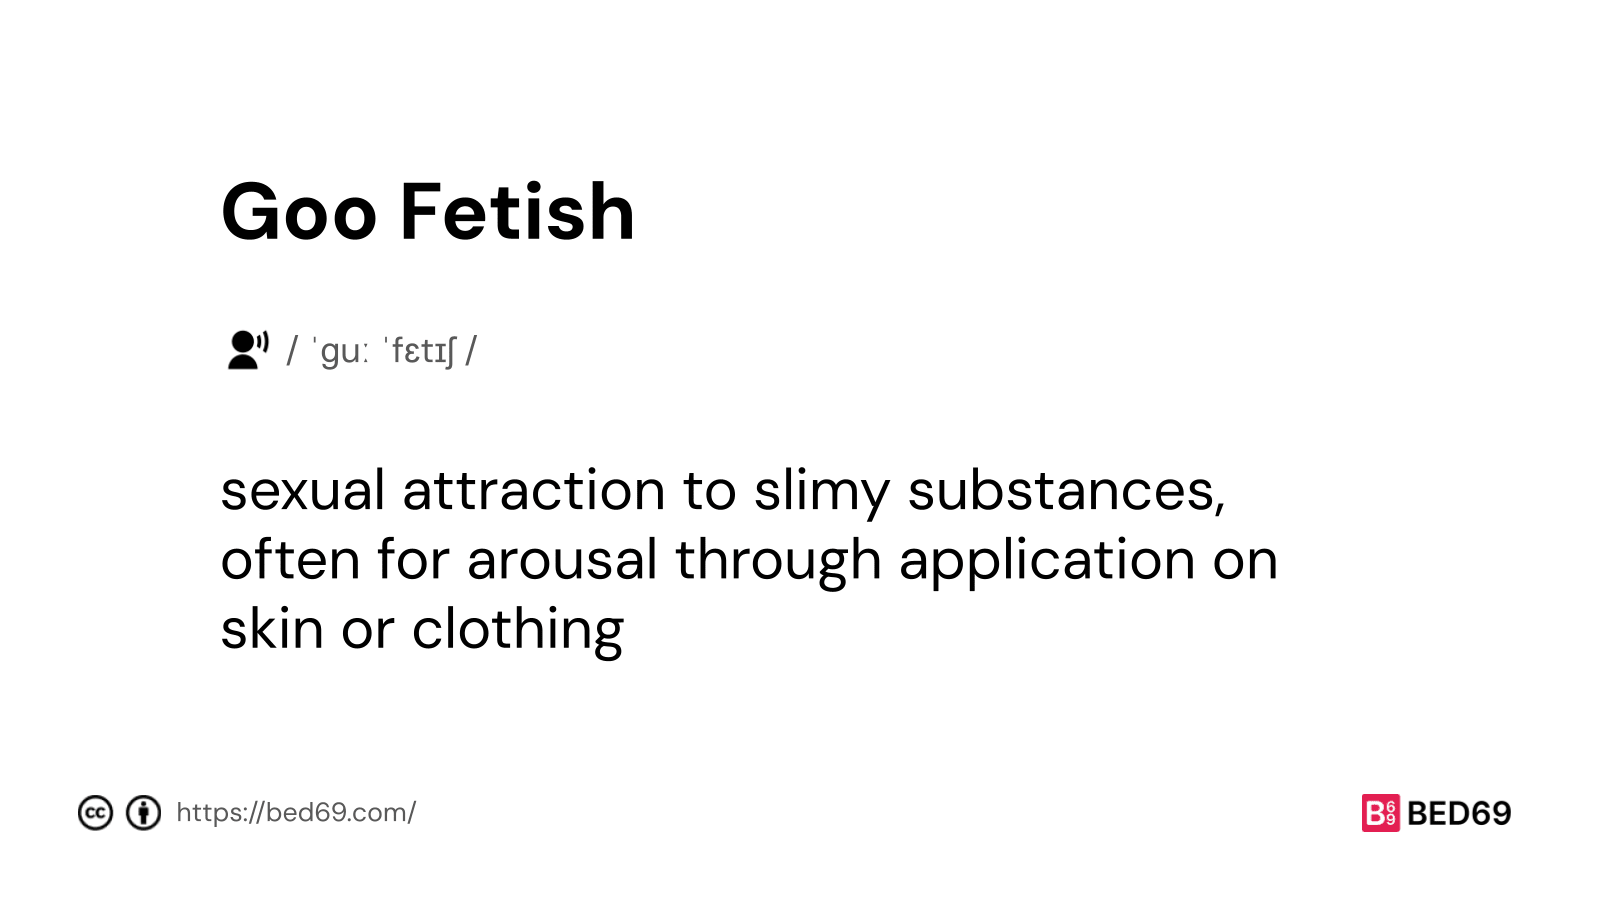 Goo Fetish - Word Definition